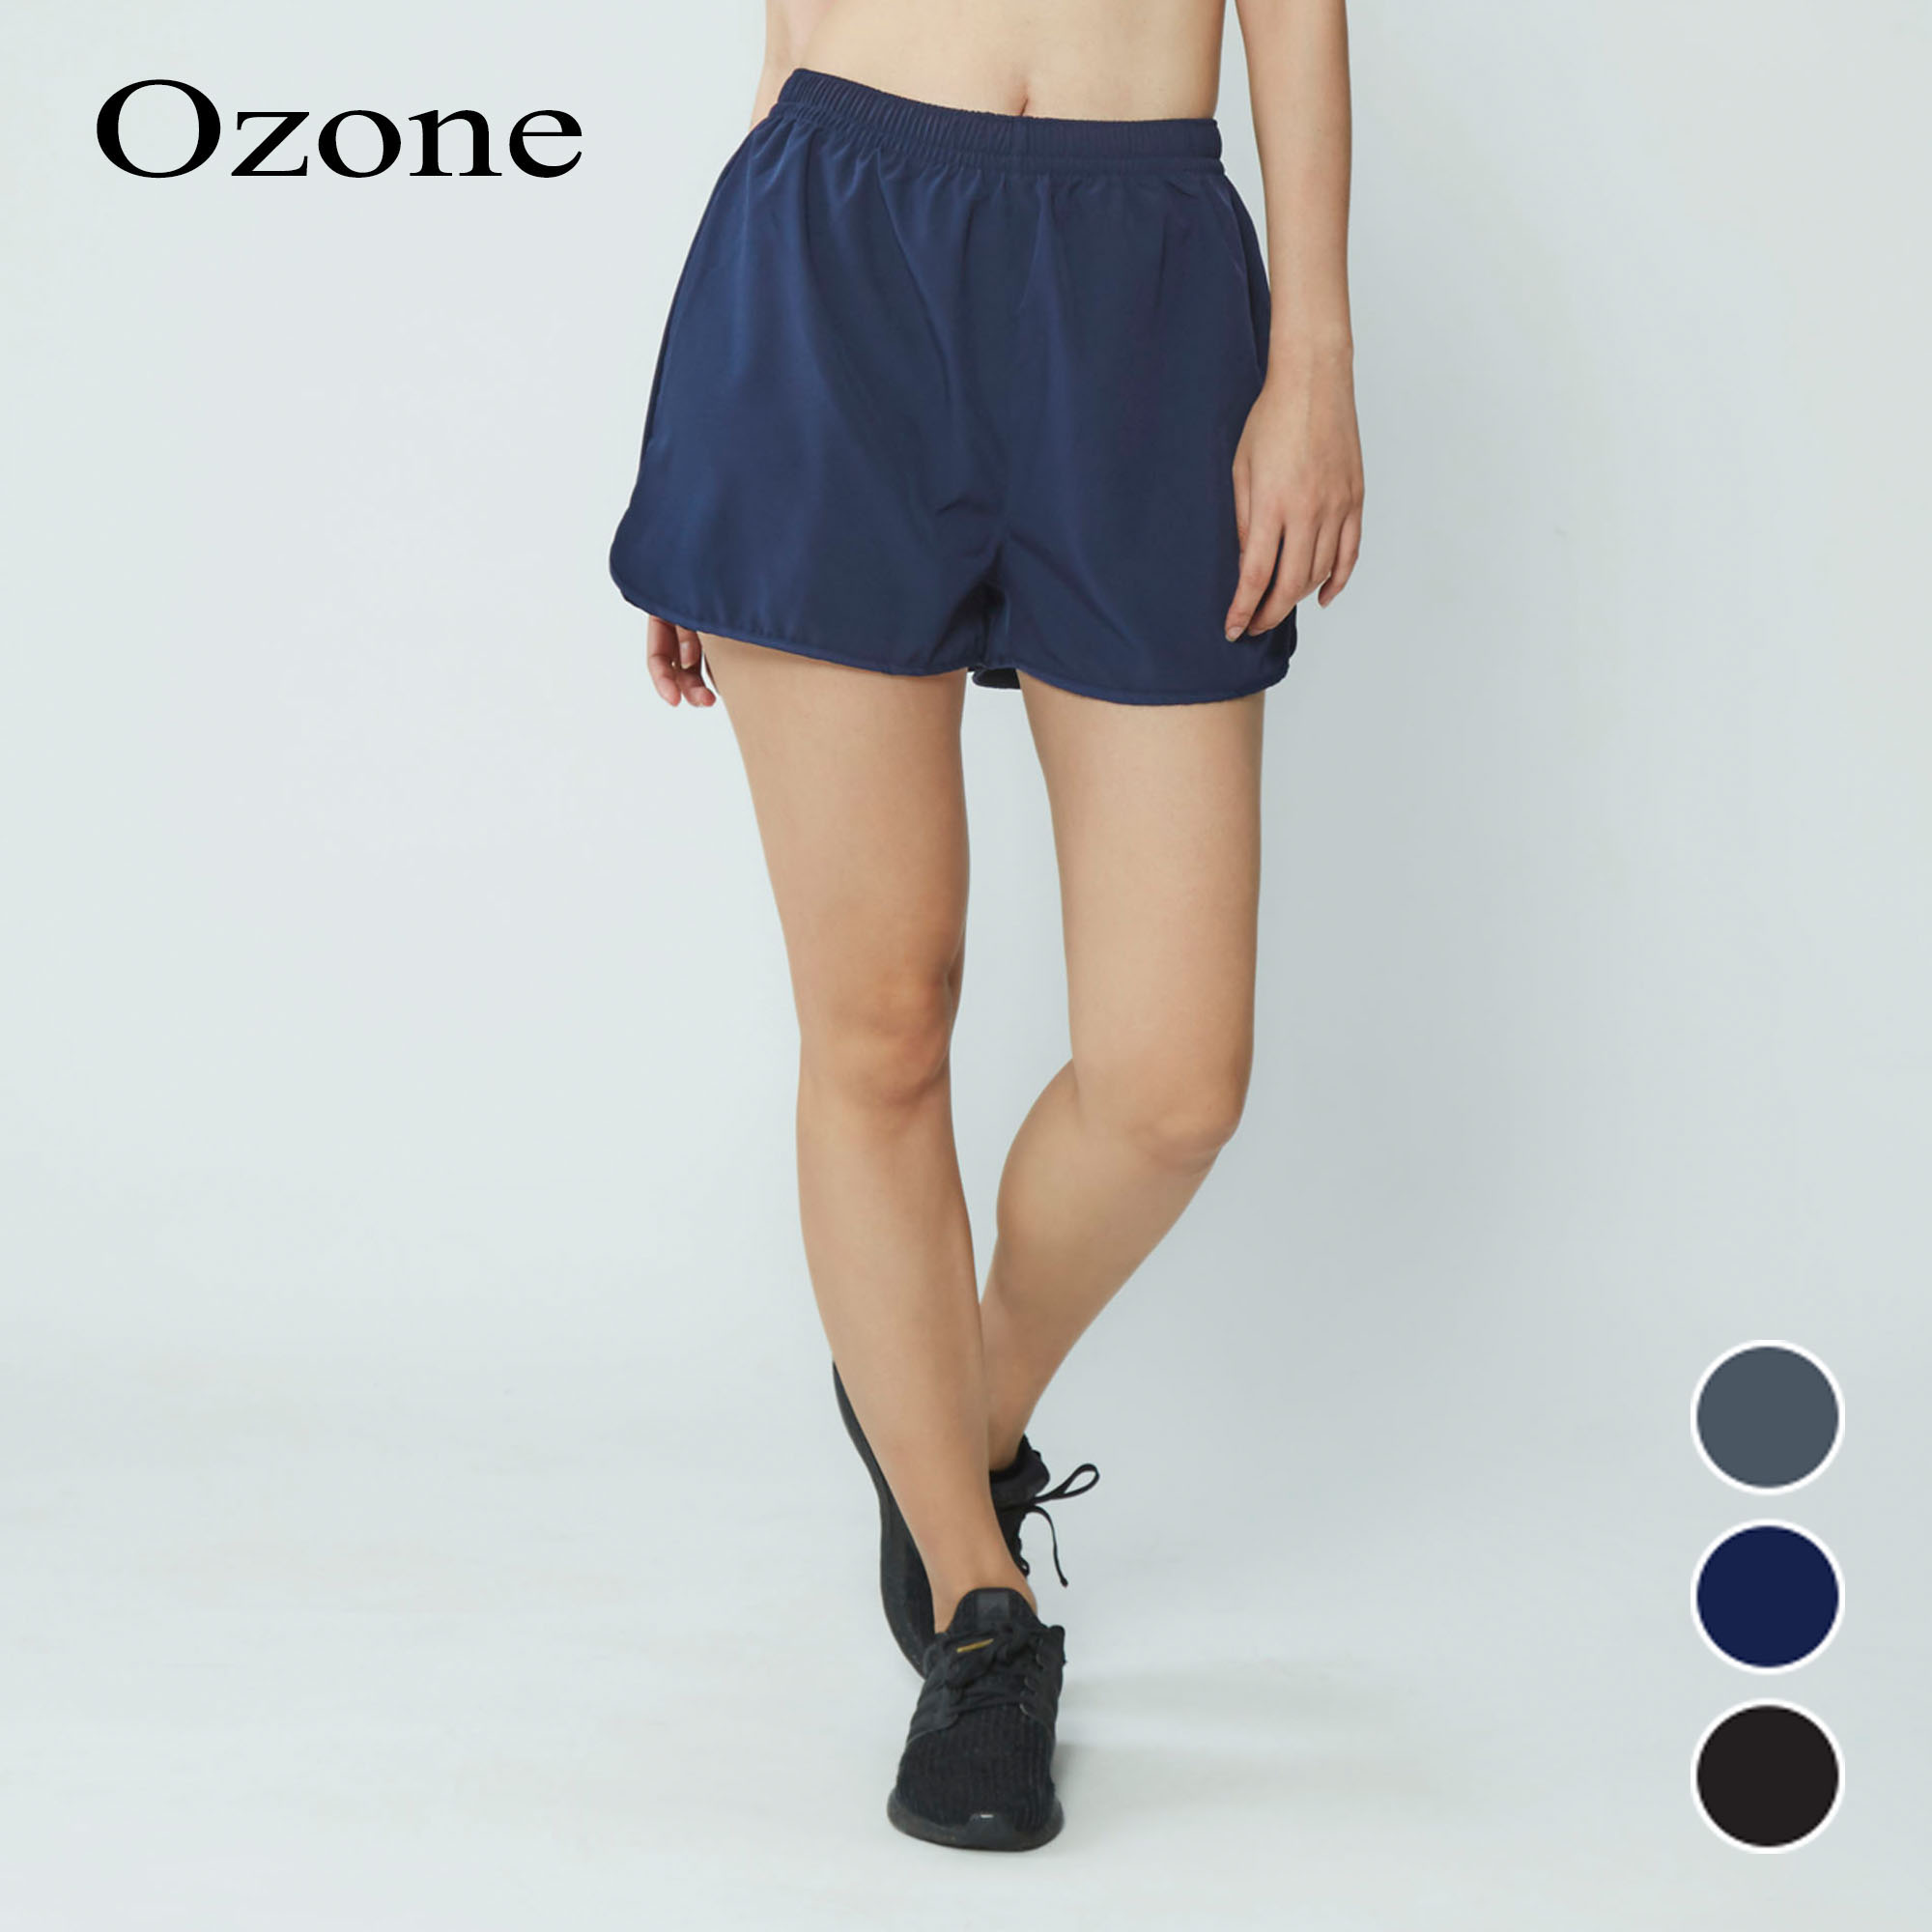 OZONE SHORT PANT ชุดออกกำลังกาย กางเกงขาสั้น มีให้เลือก 3 สี รุ่น WP2001